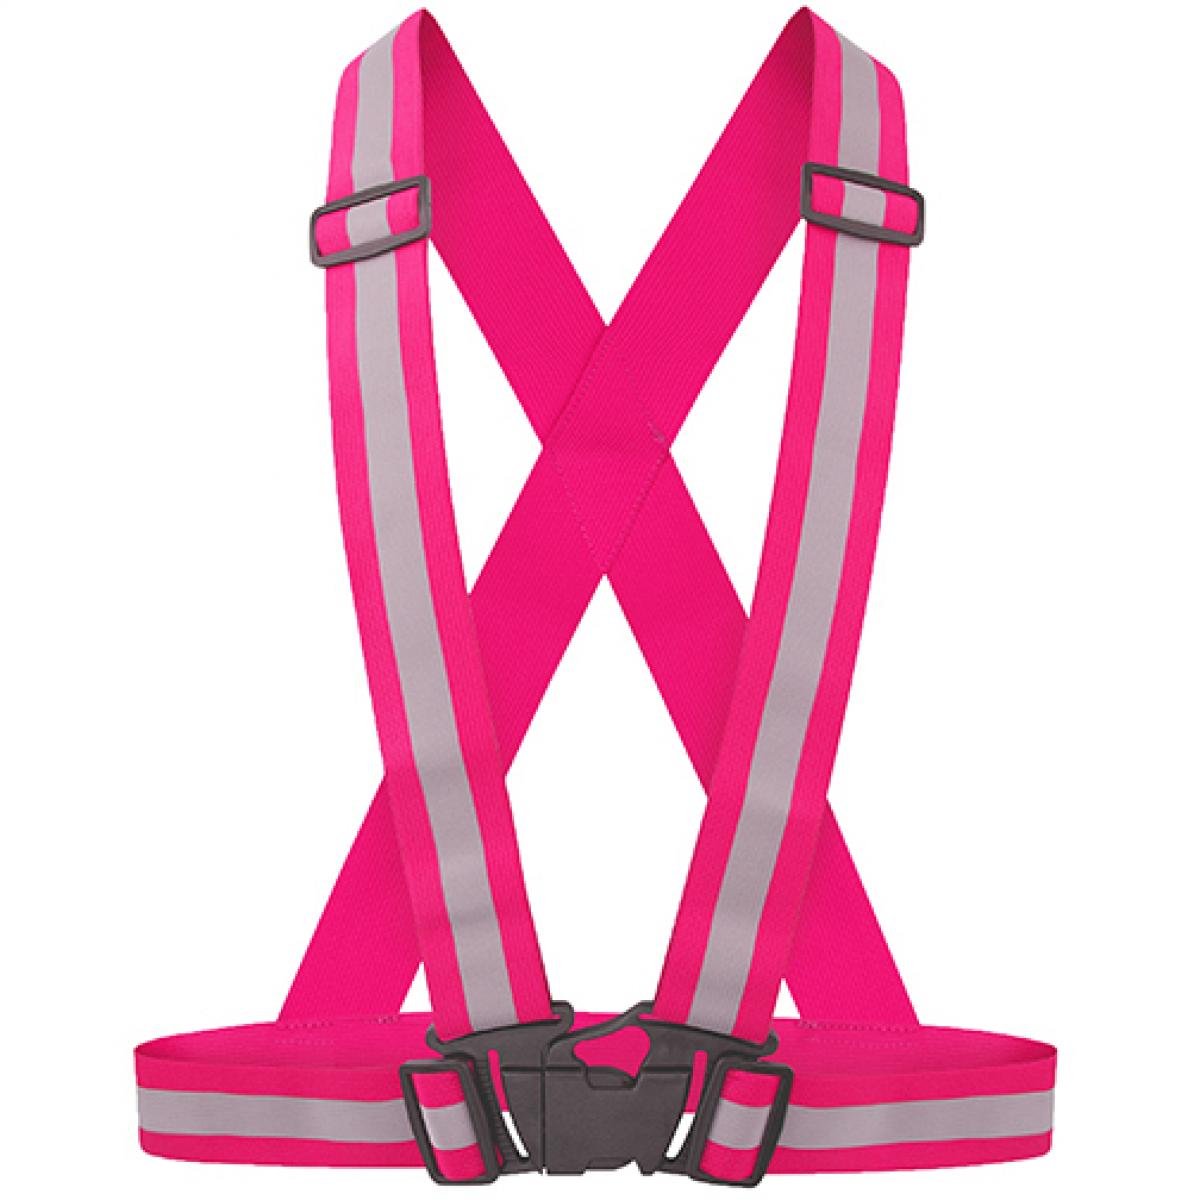 Hersteller: Korntex Herstellernummer: KXZBAND Artikelbezeichnung: Reflective Body Belt Prague Sicherheitsweste Farbe: Pink